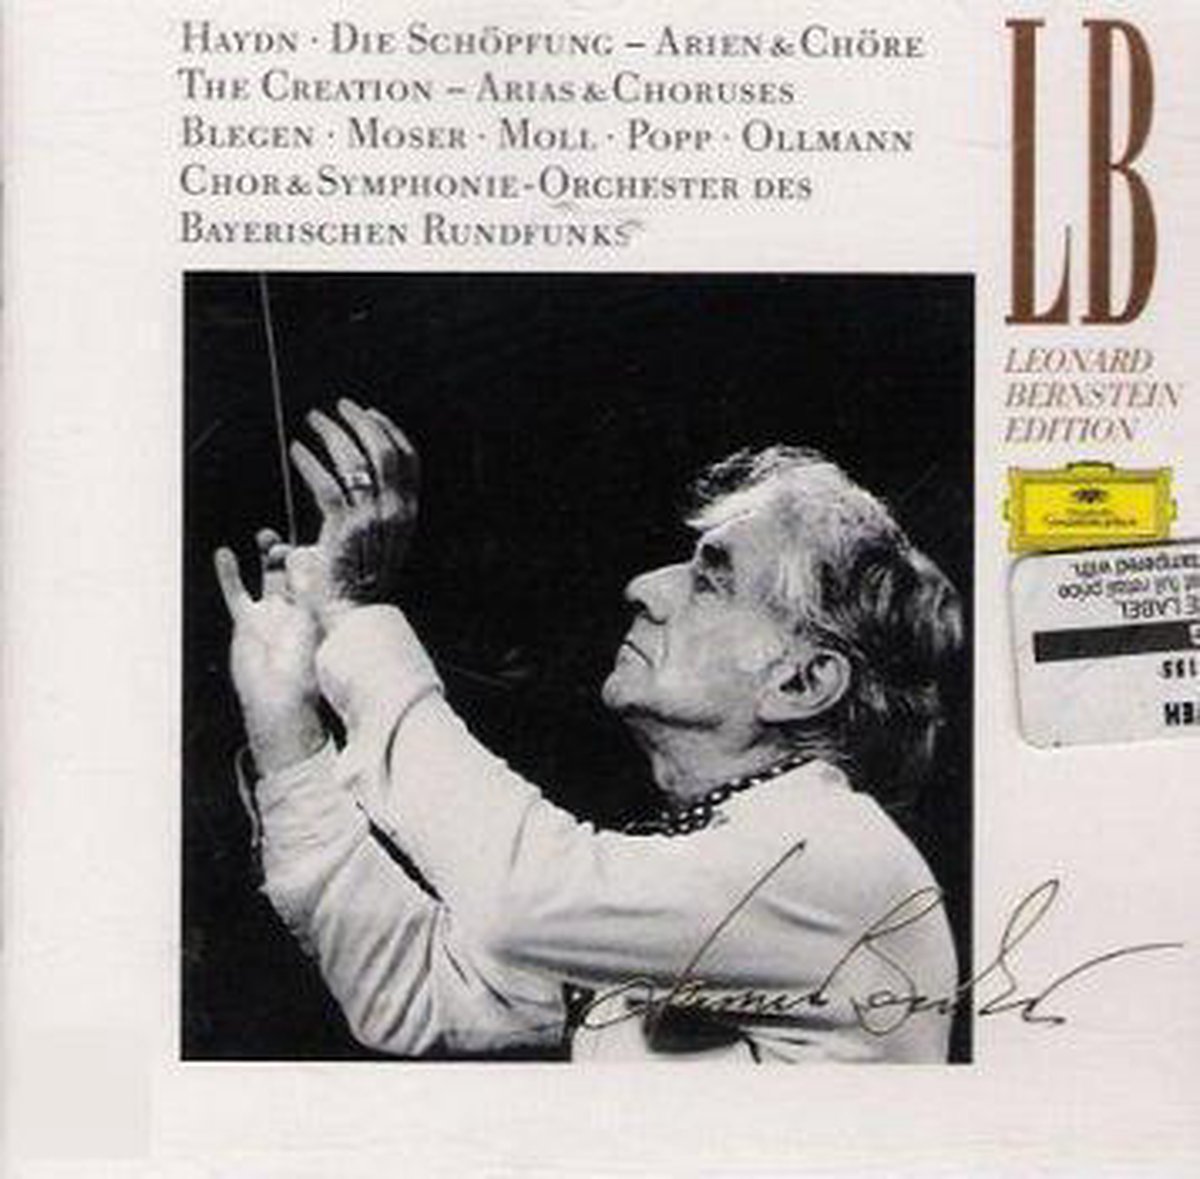 Haydn: Die Schopfung - Leonard Bernstein / Orchester des Bayerischen Rundfunks